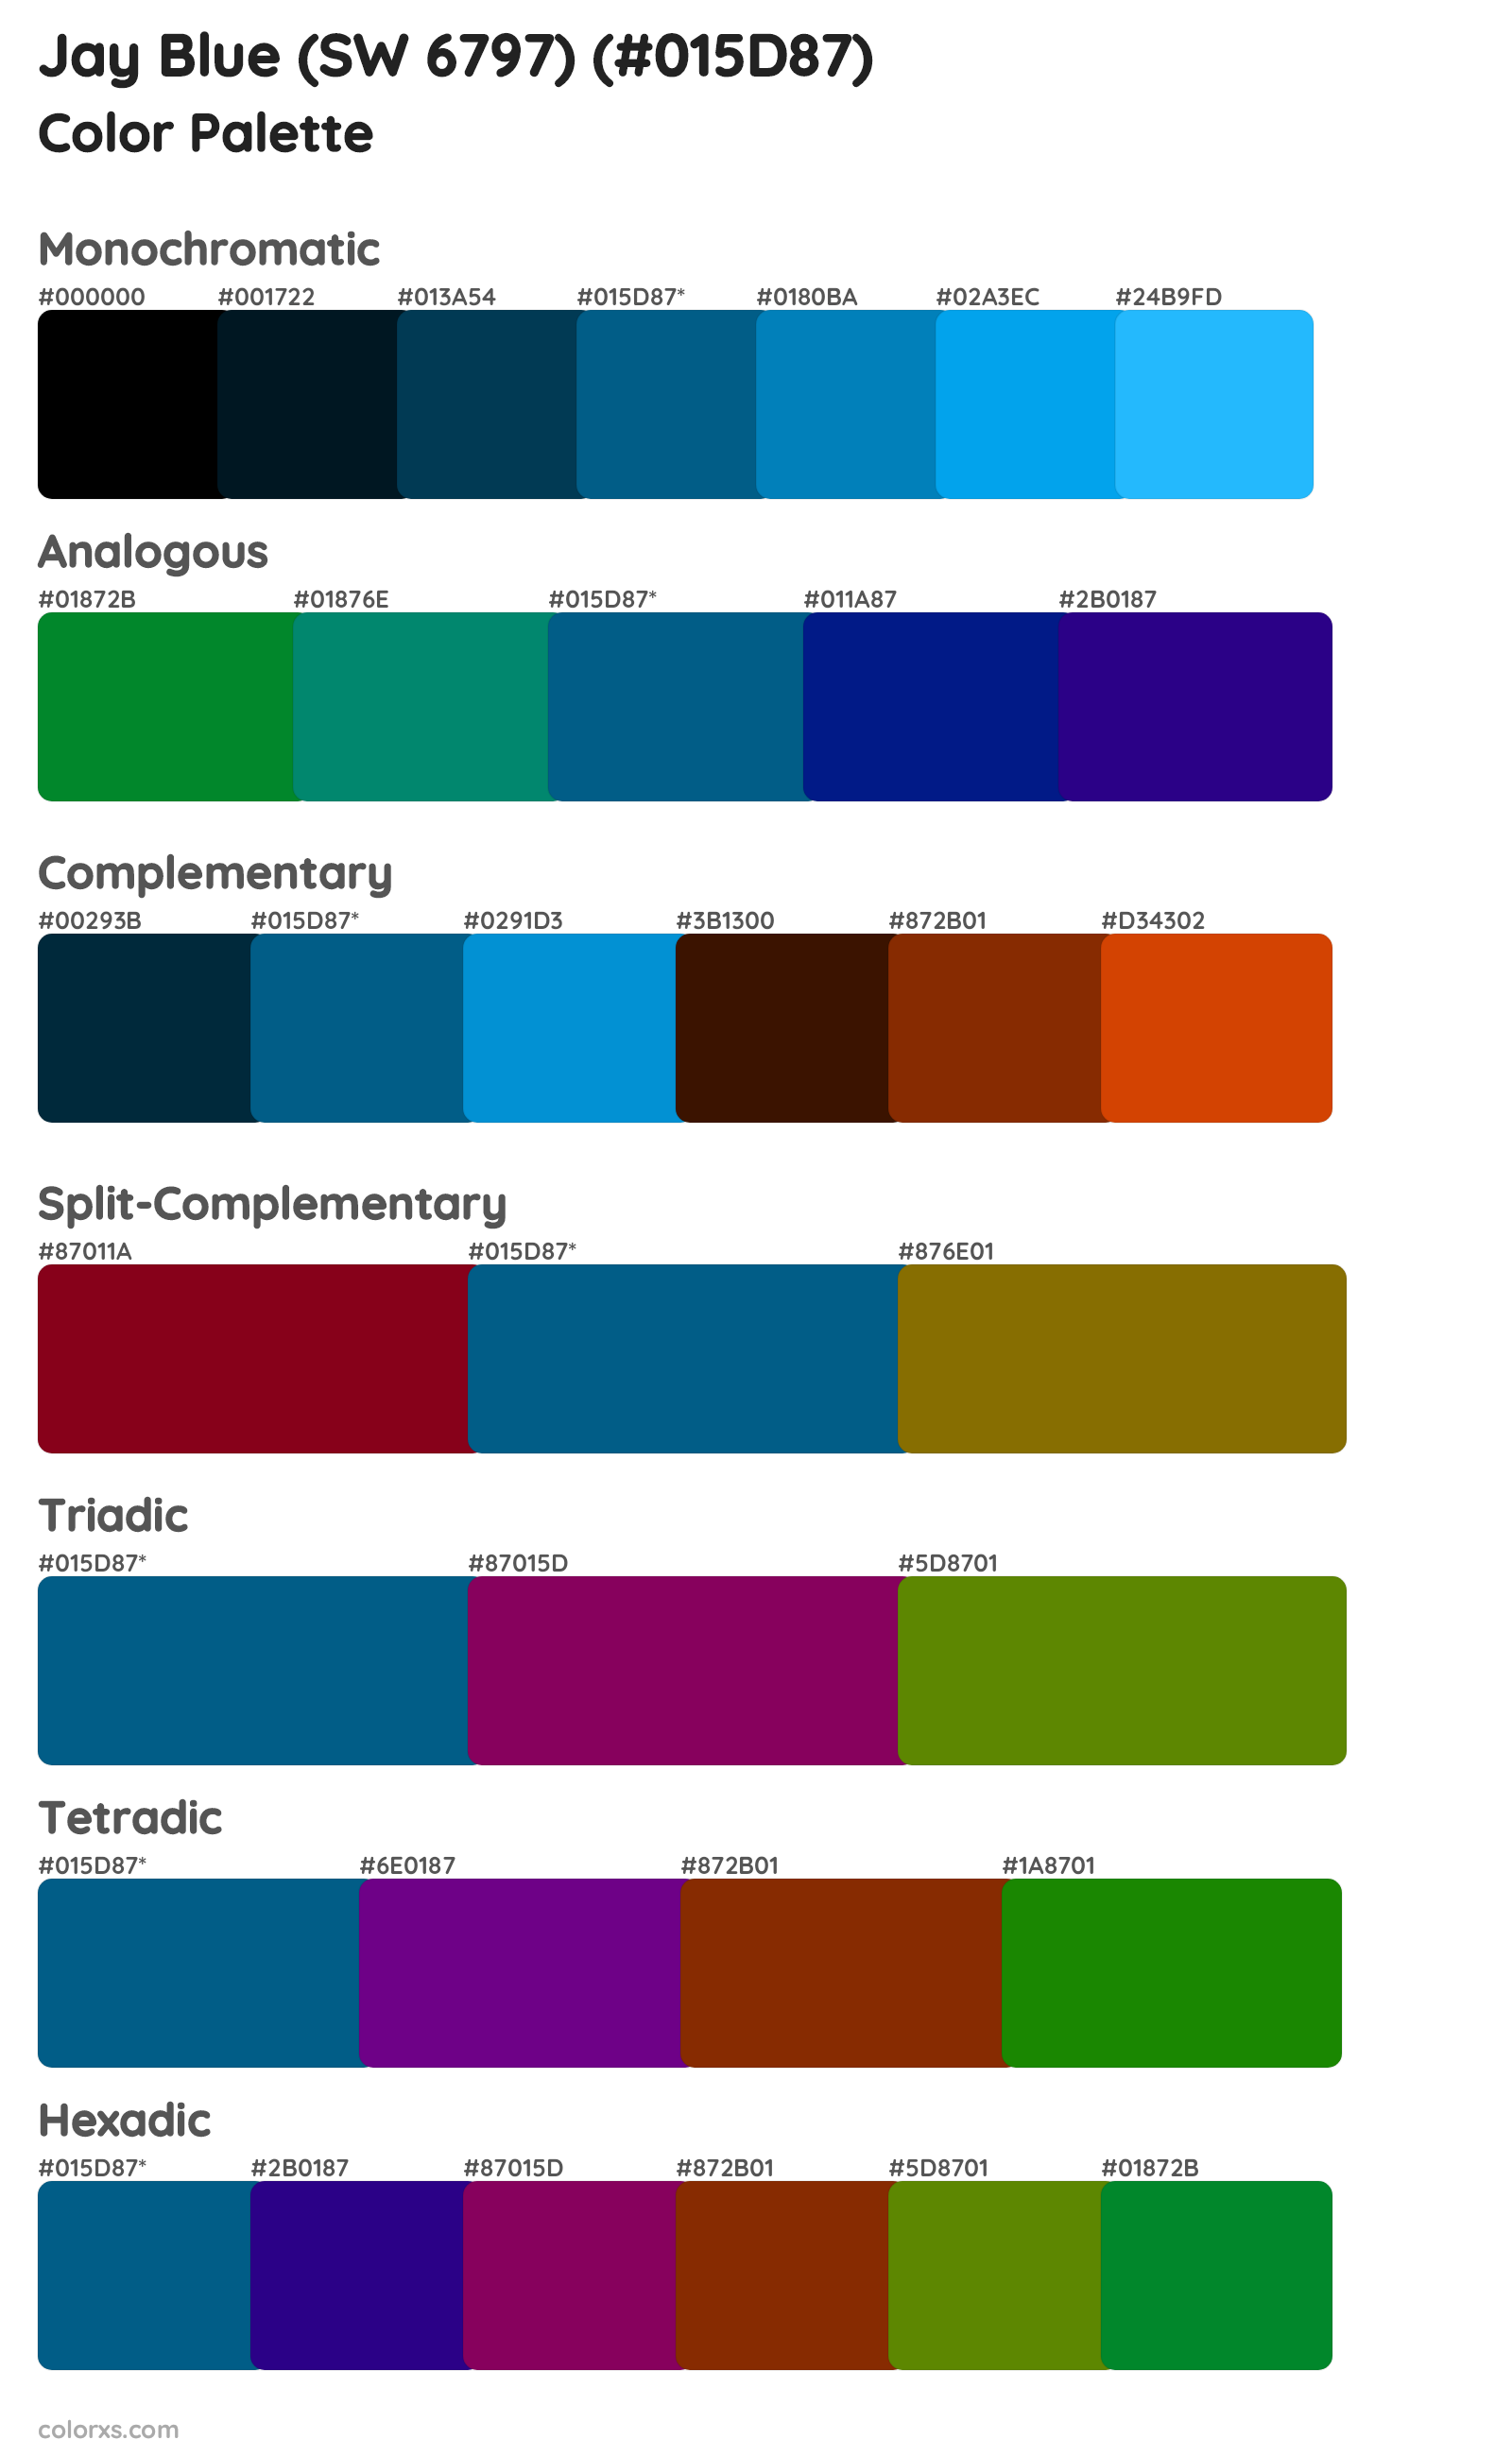 Jay Blue (SW 6797) Color Scheme Palettes